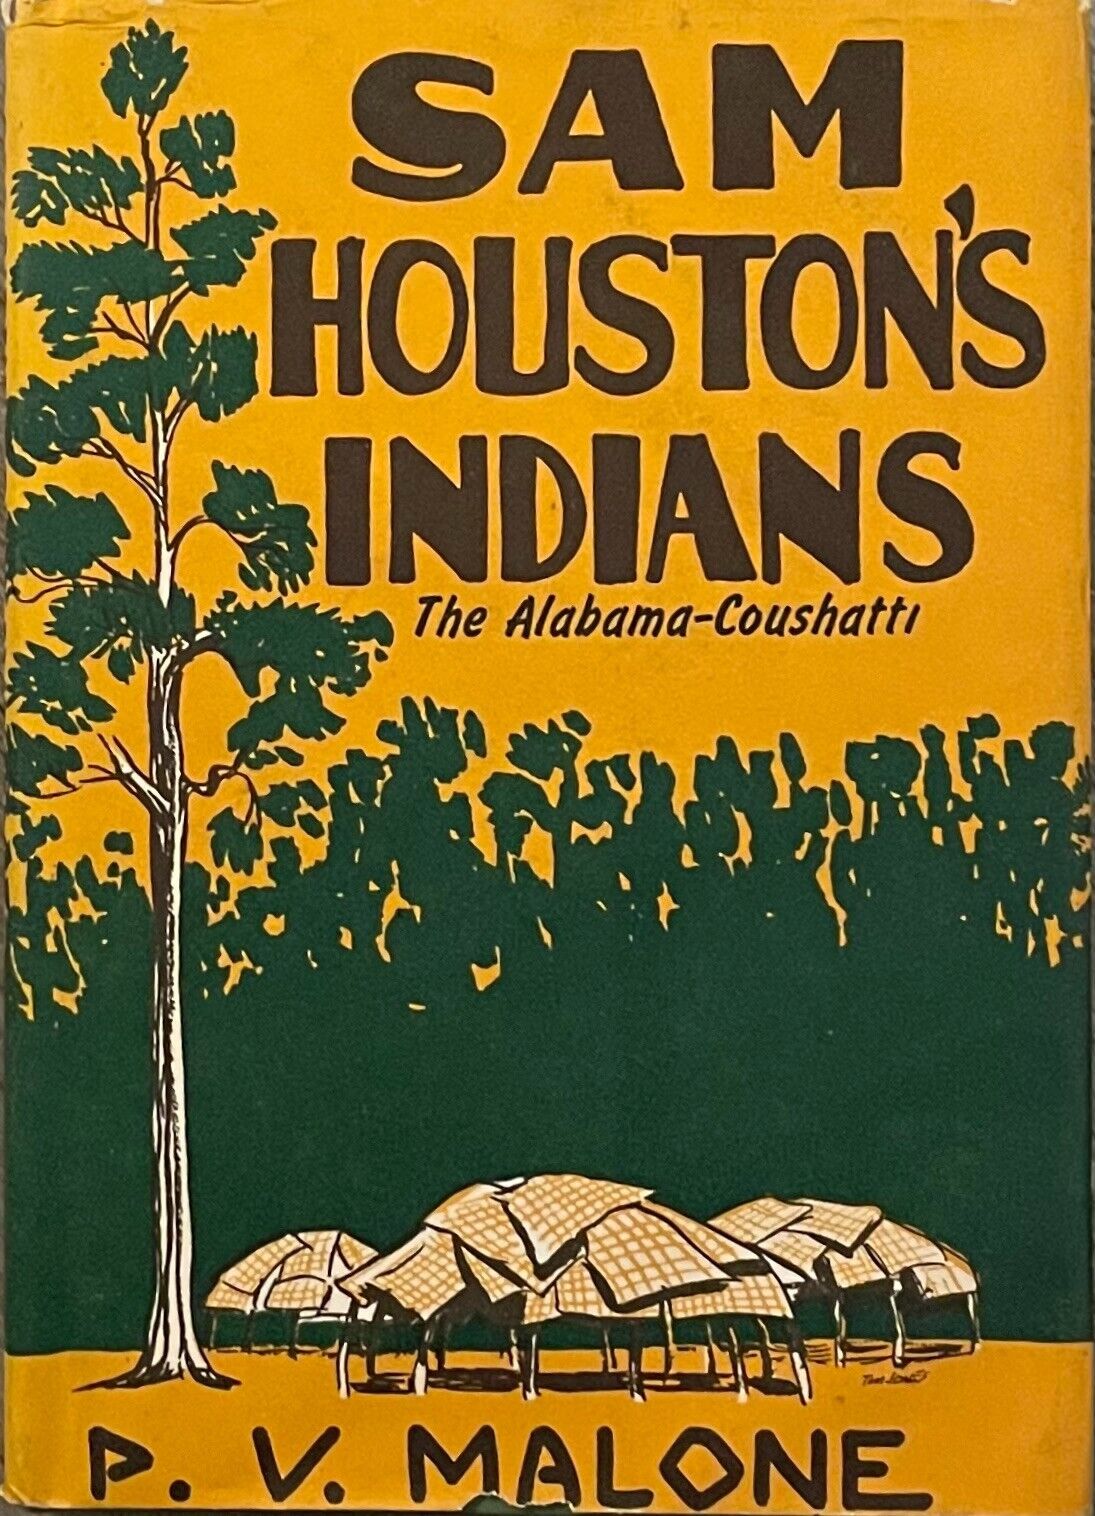 SCARCE-VINTAGE-1ST ED. 1960-SAM HOUSTON'S INDIANS-THE ALABAMA COUSHATTI-HB-DJ